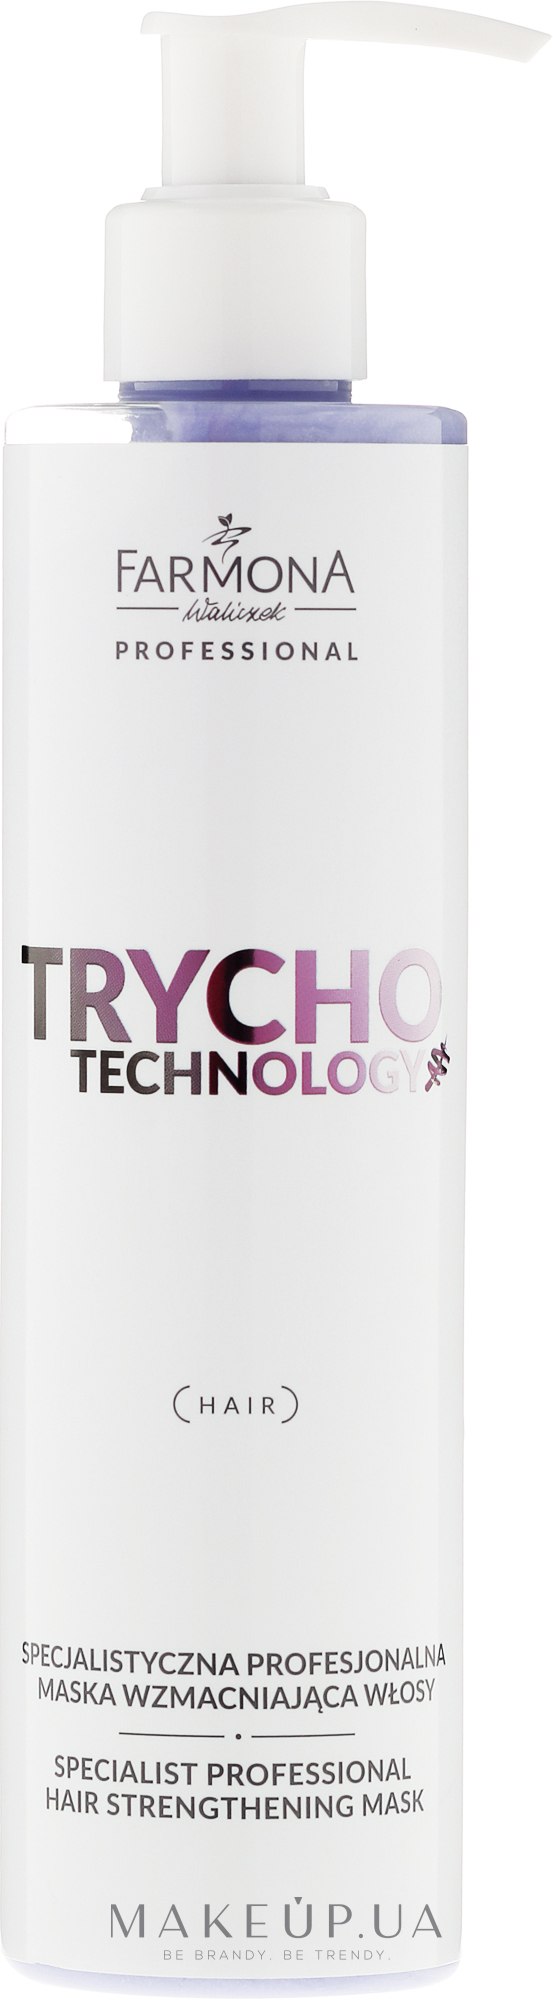 Спеціалізована маска для зміцнення волосся - Farmona Professional Trycho Technology Specialist Hair Strengthening Mask — фото 250ml